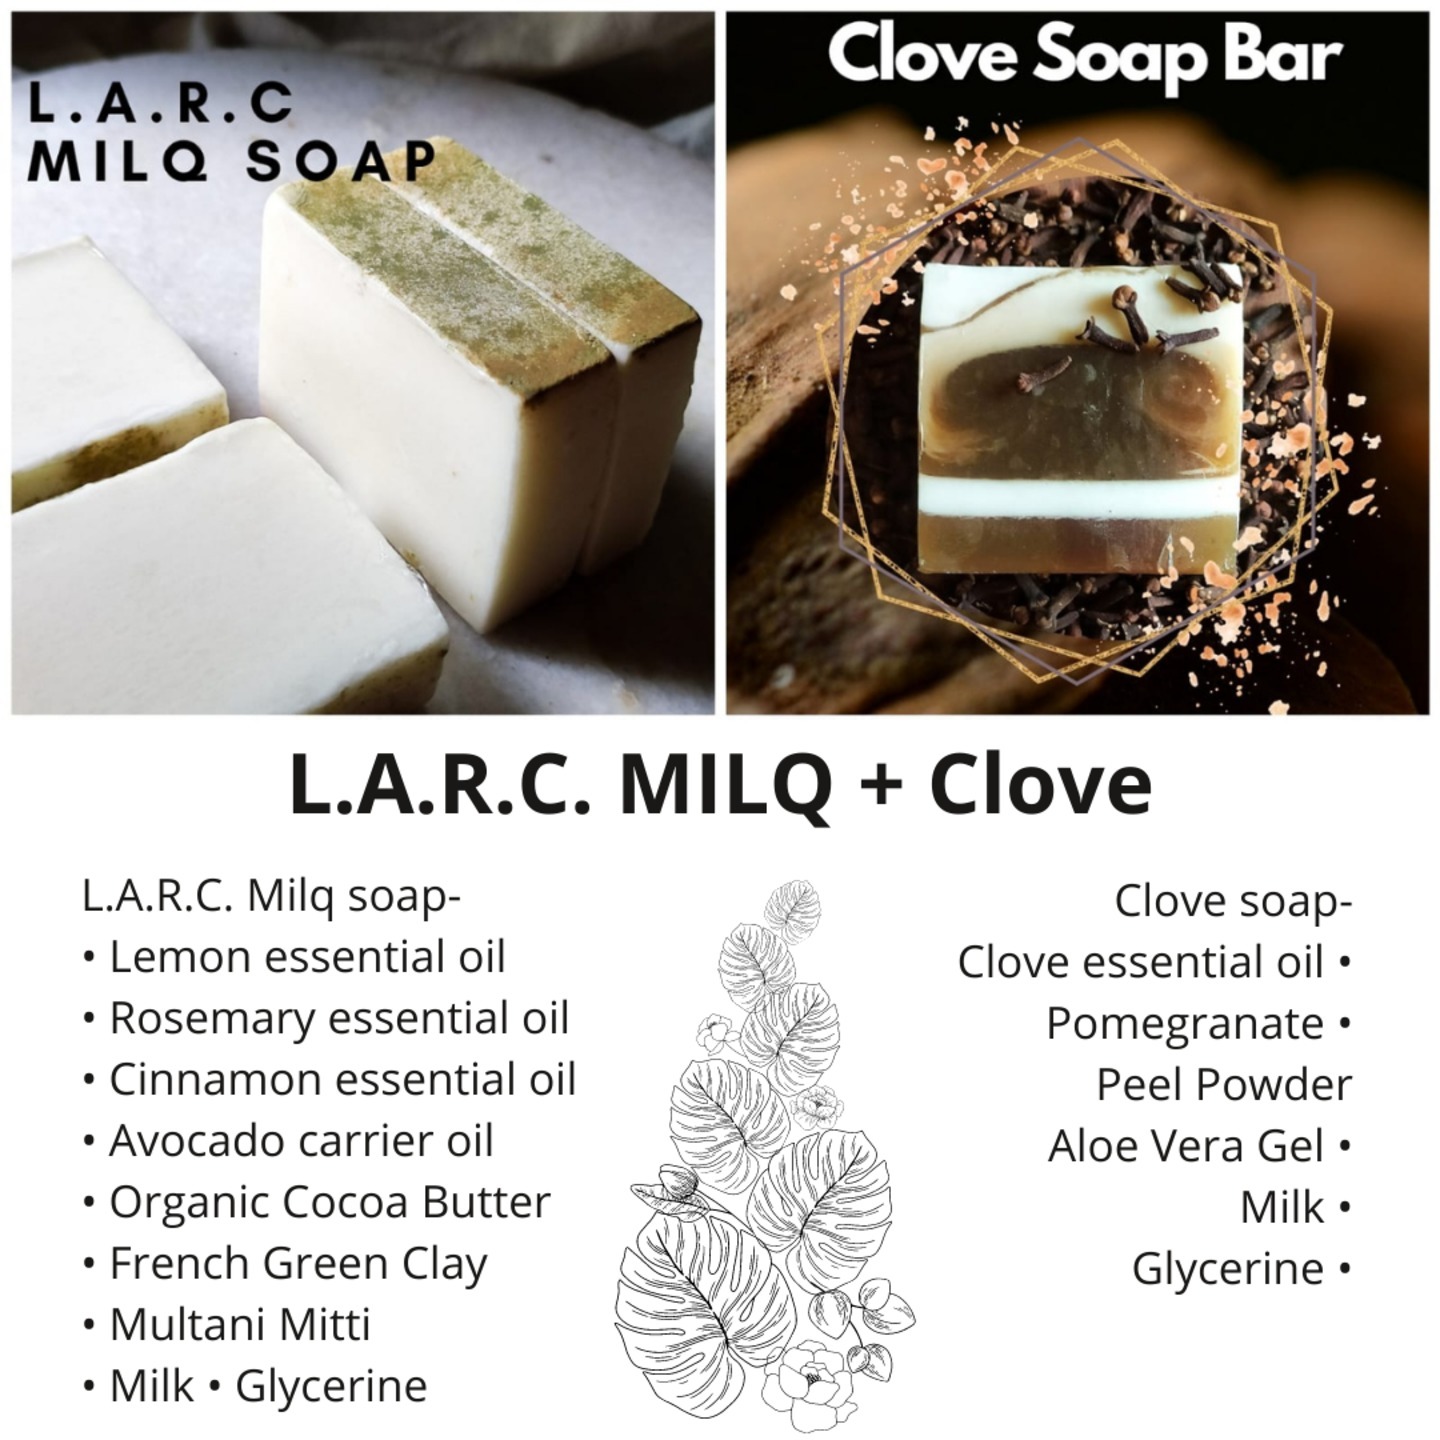 L.A.R.C Milq Soap & Clove Soap Bars